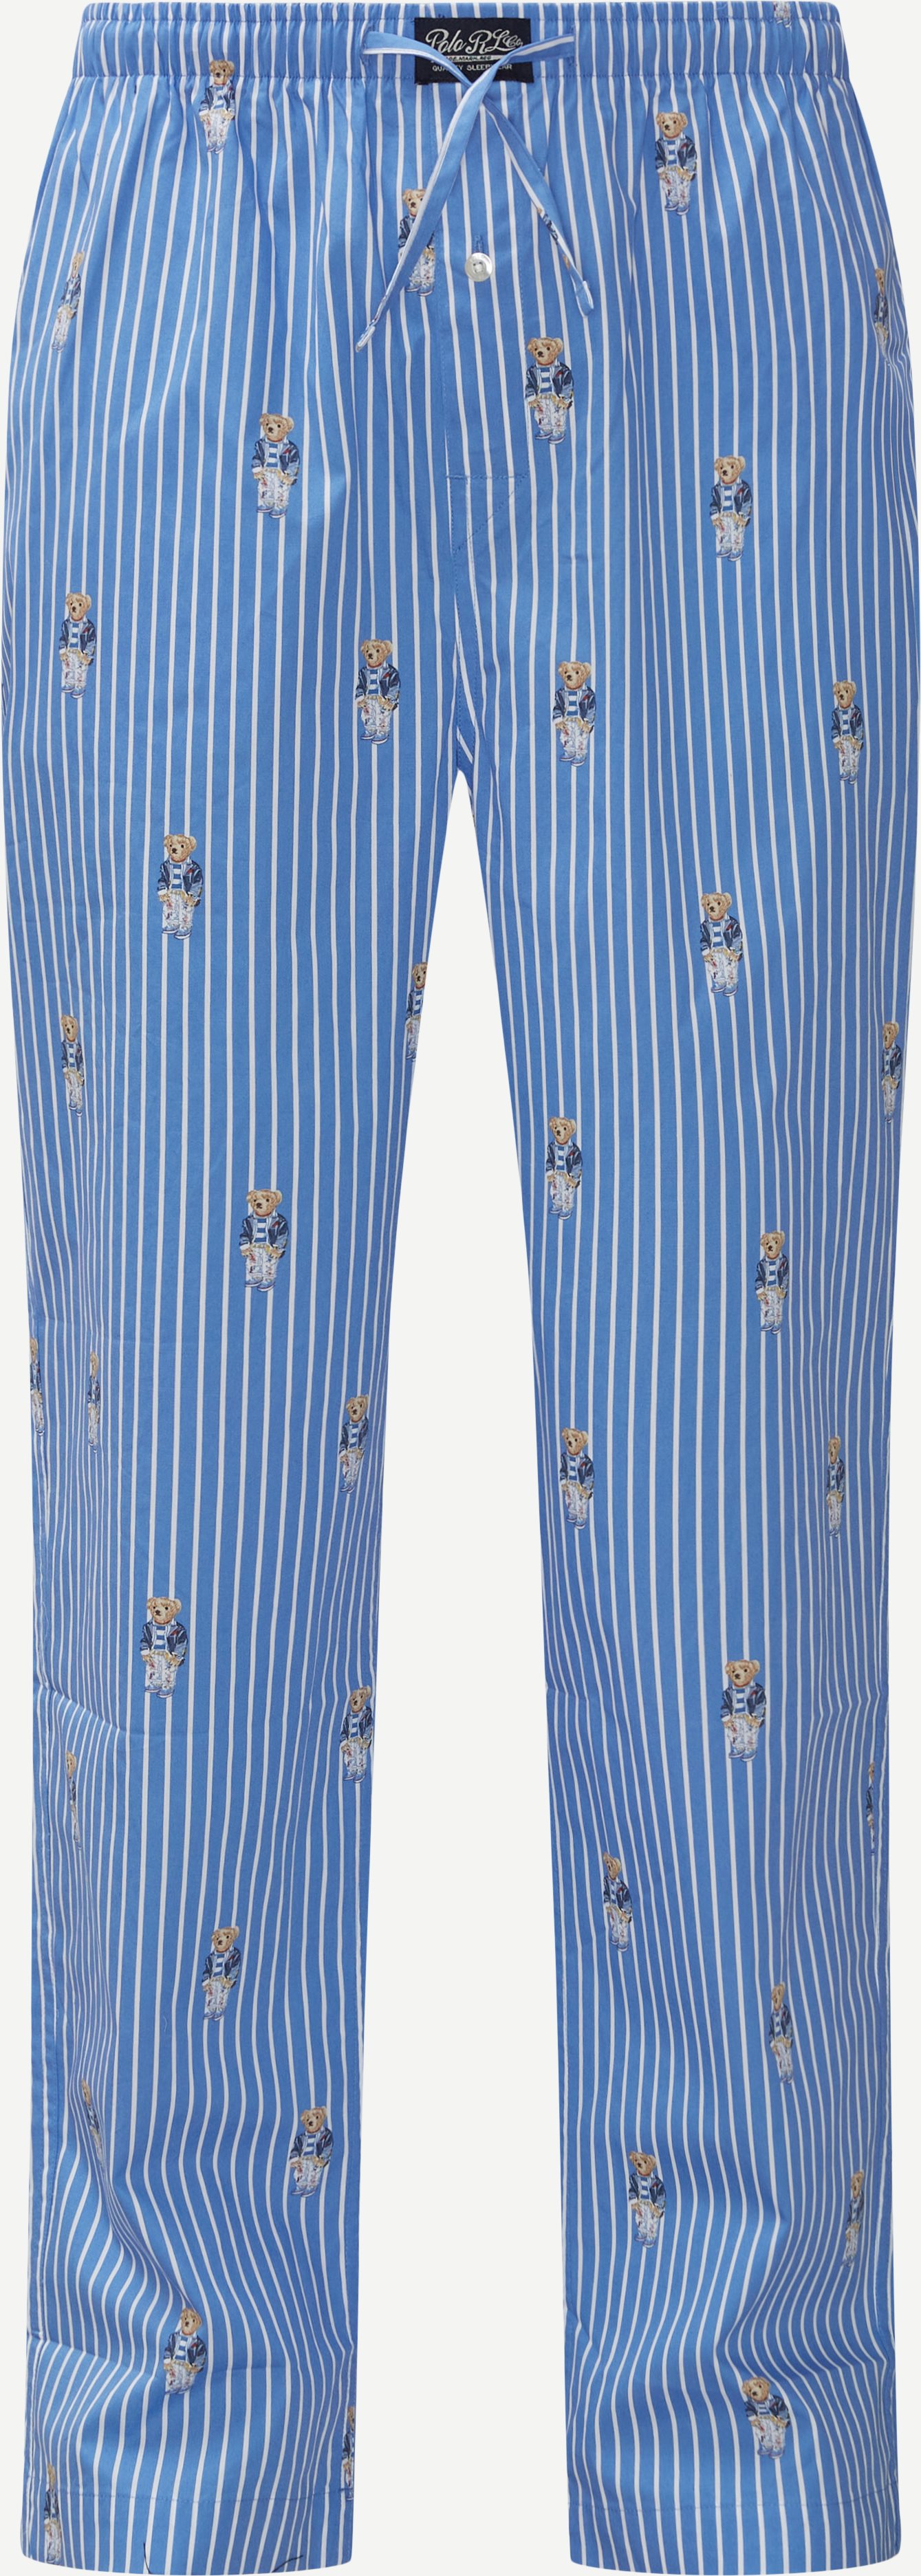 Pyjamasbyxor - Underkläder - Regular fit - Blå